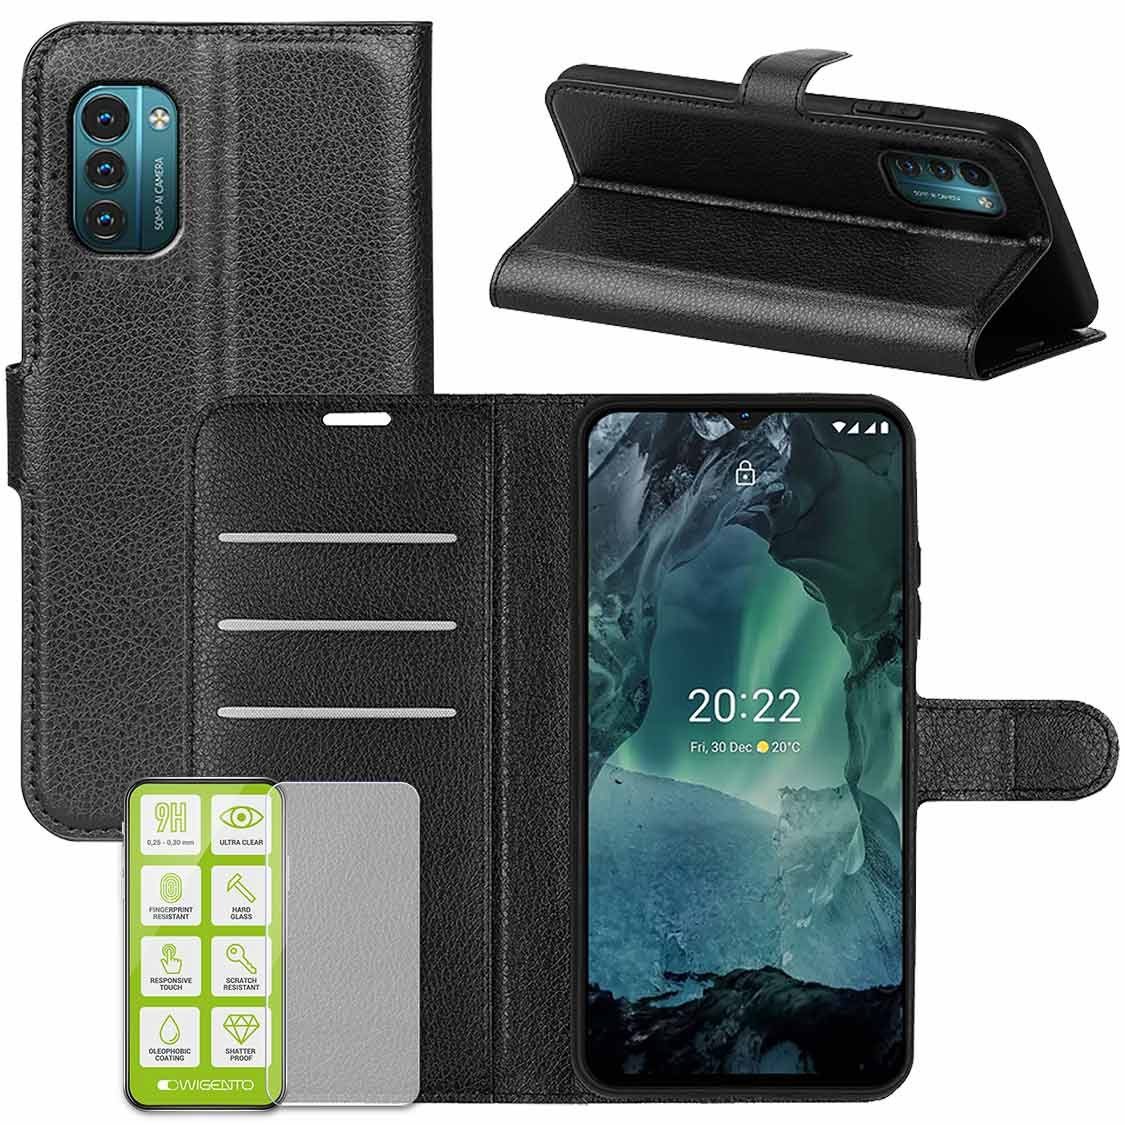 Wigento Handyhülle Für Nokia G21 / G11 Handy Tasche Wallet Premium Schutz Hülle Case Cover Etuis Neu Zubehör